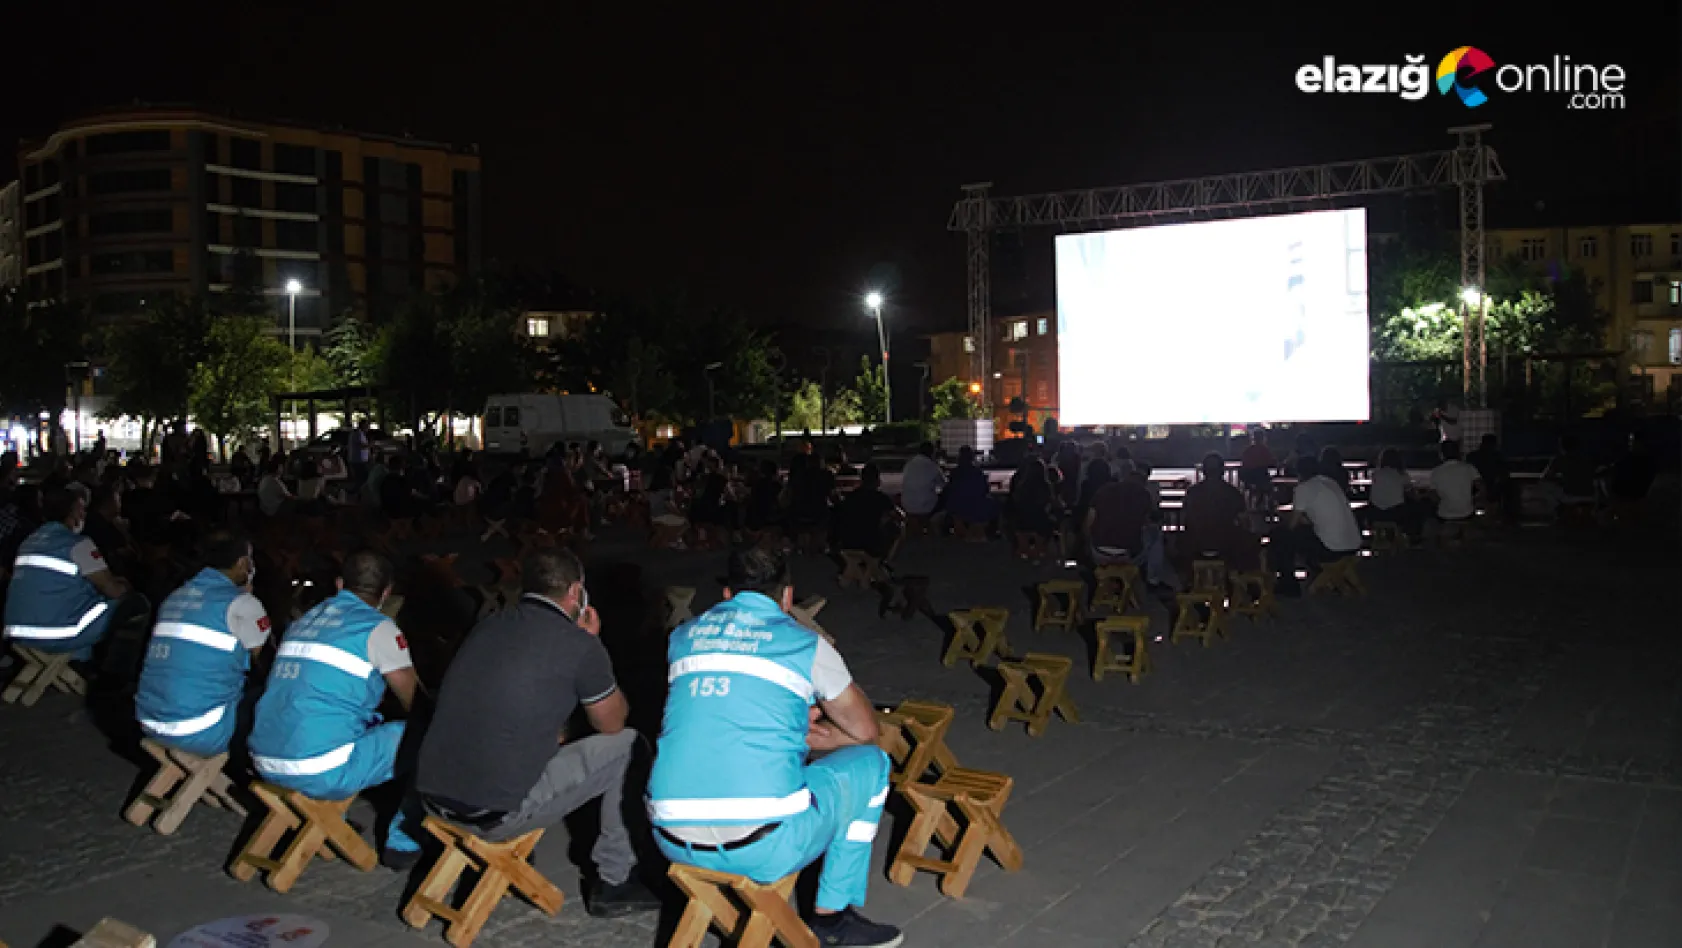 Elazığ Belediyesi tarafından açık hava sinema etkinliği düzenlendi